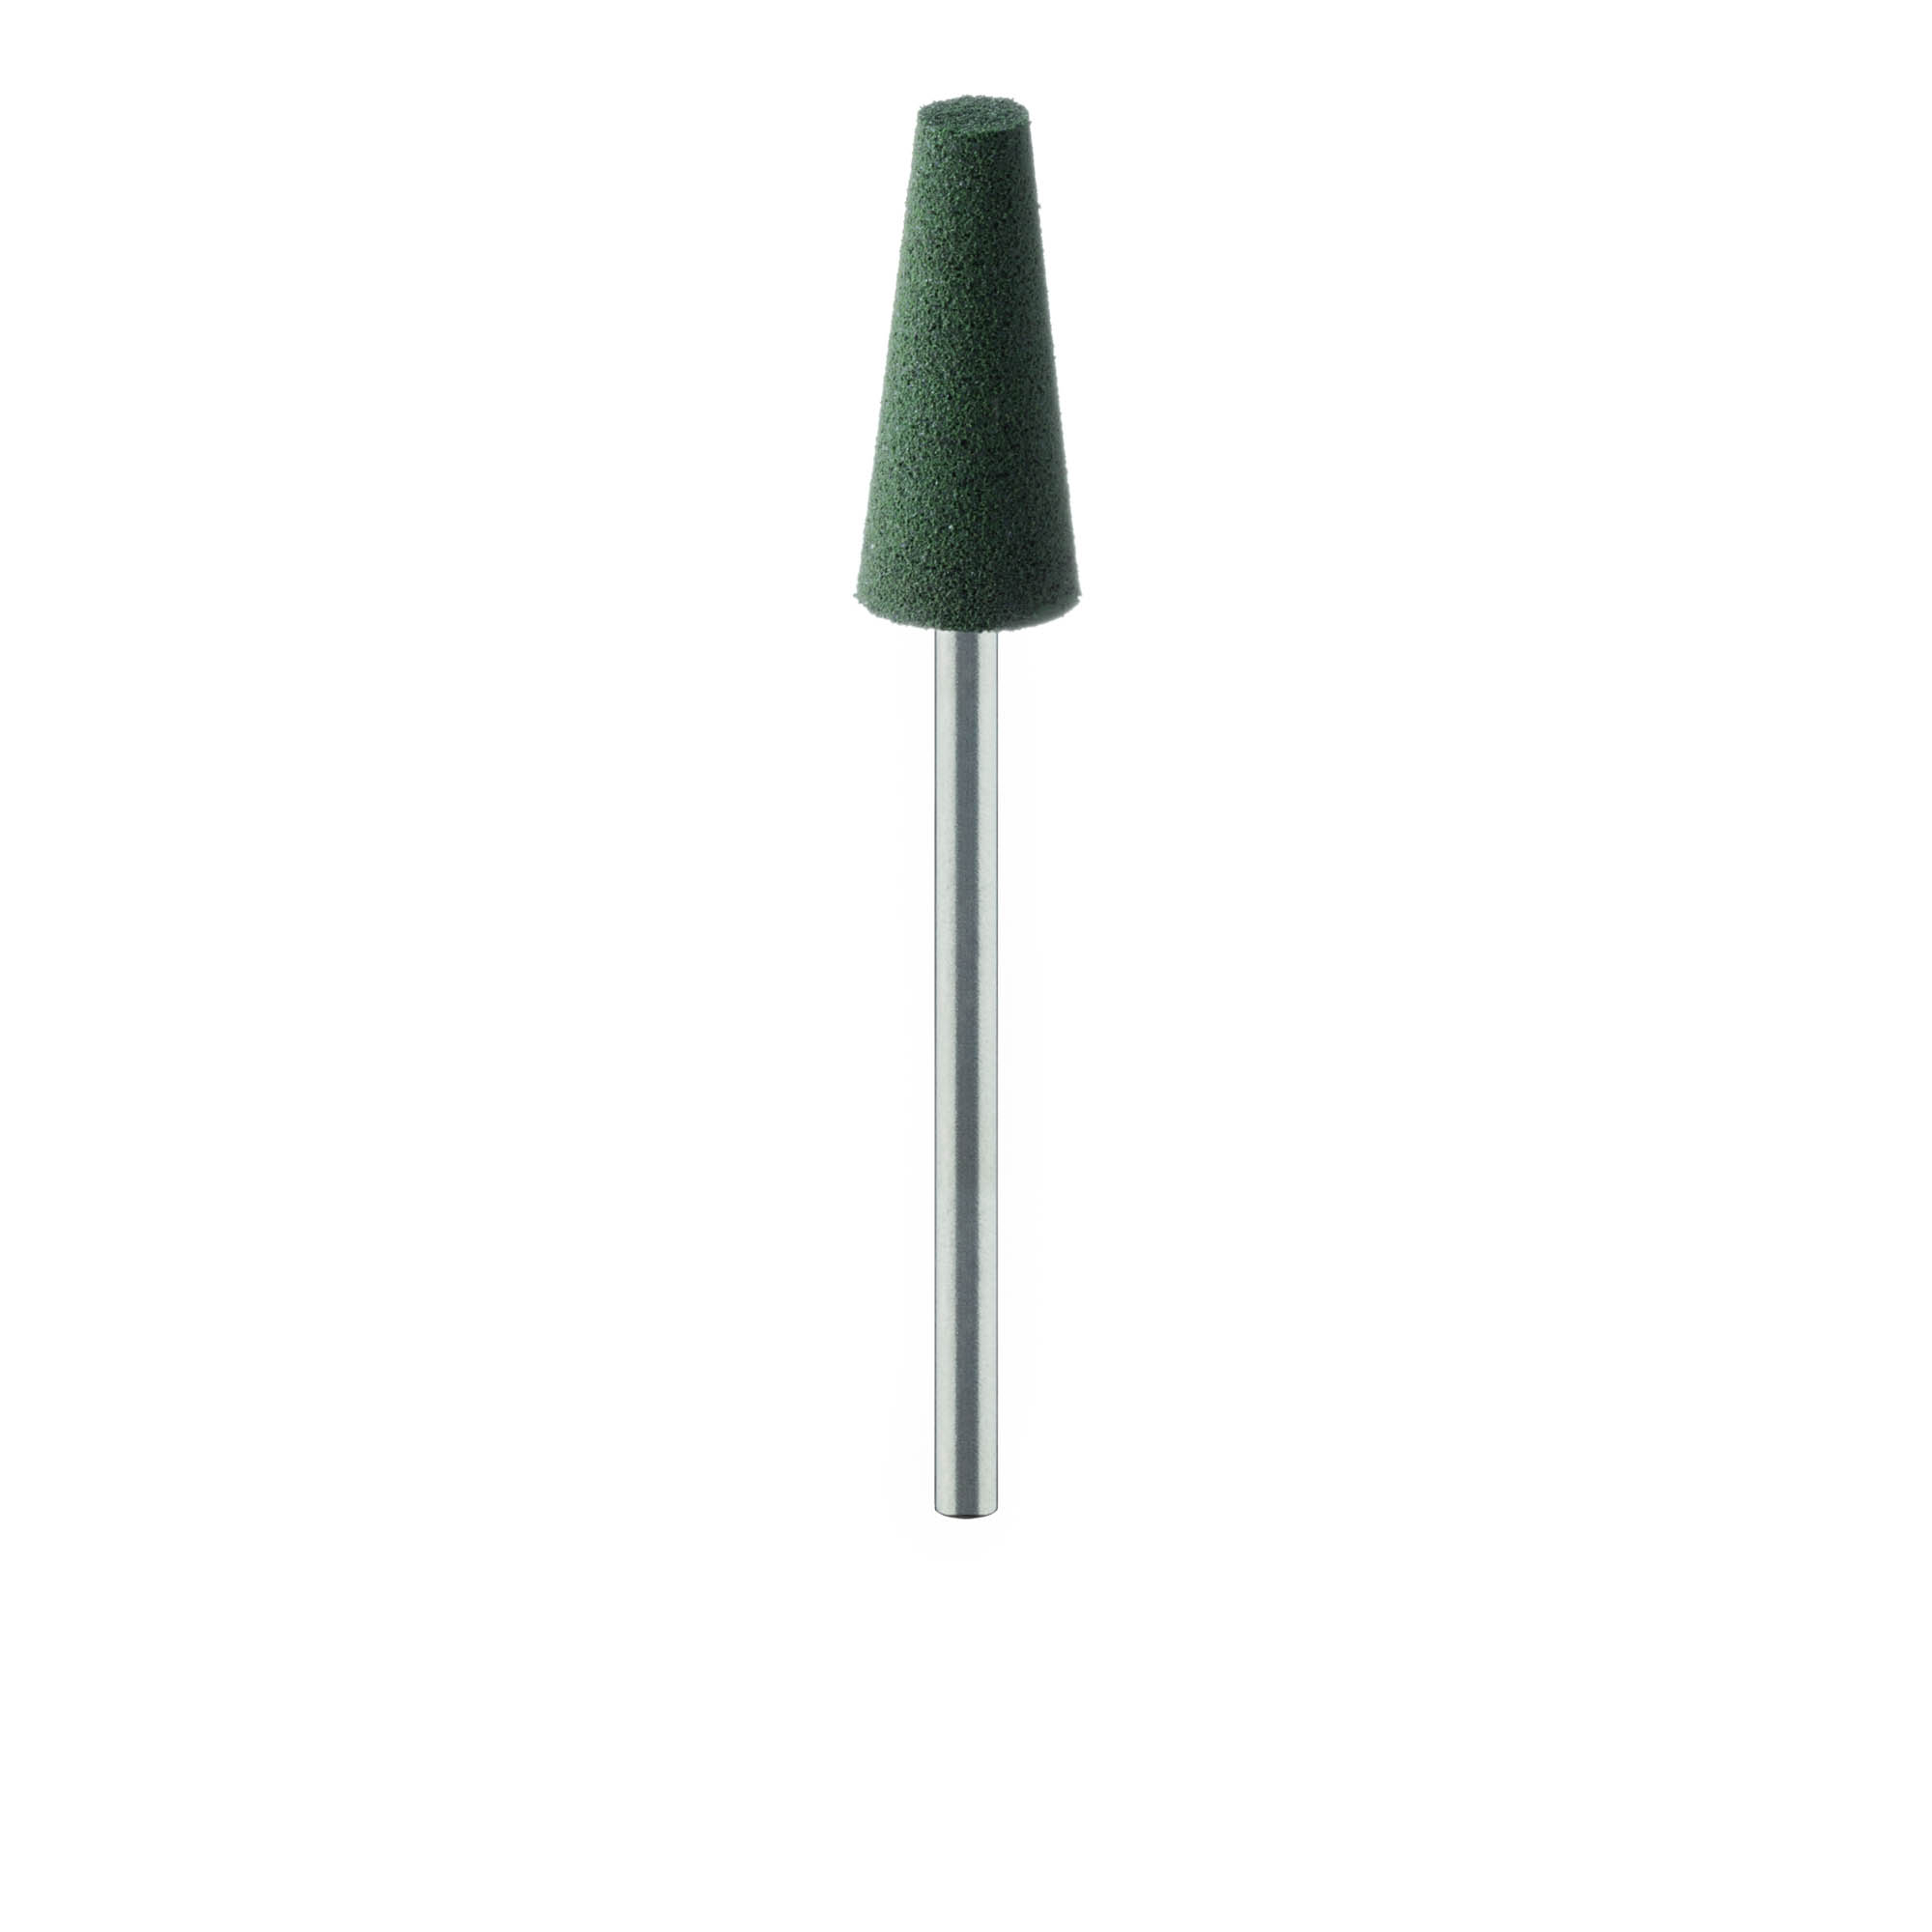 9577V-080-HP-GRN Polisher, For Acrylics, Green, Flat End Cone, 8mm Ø, Pre-Polishing, HP